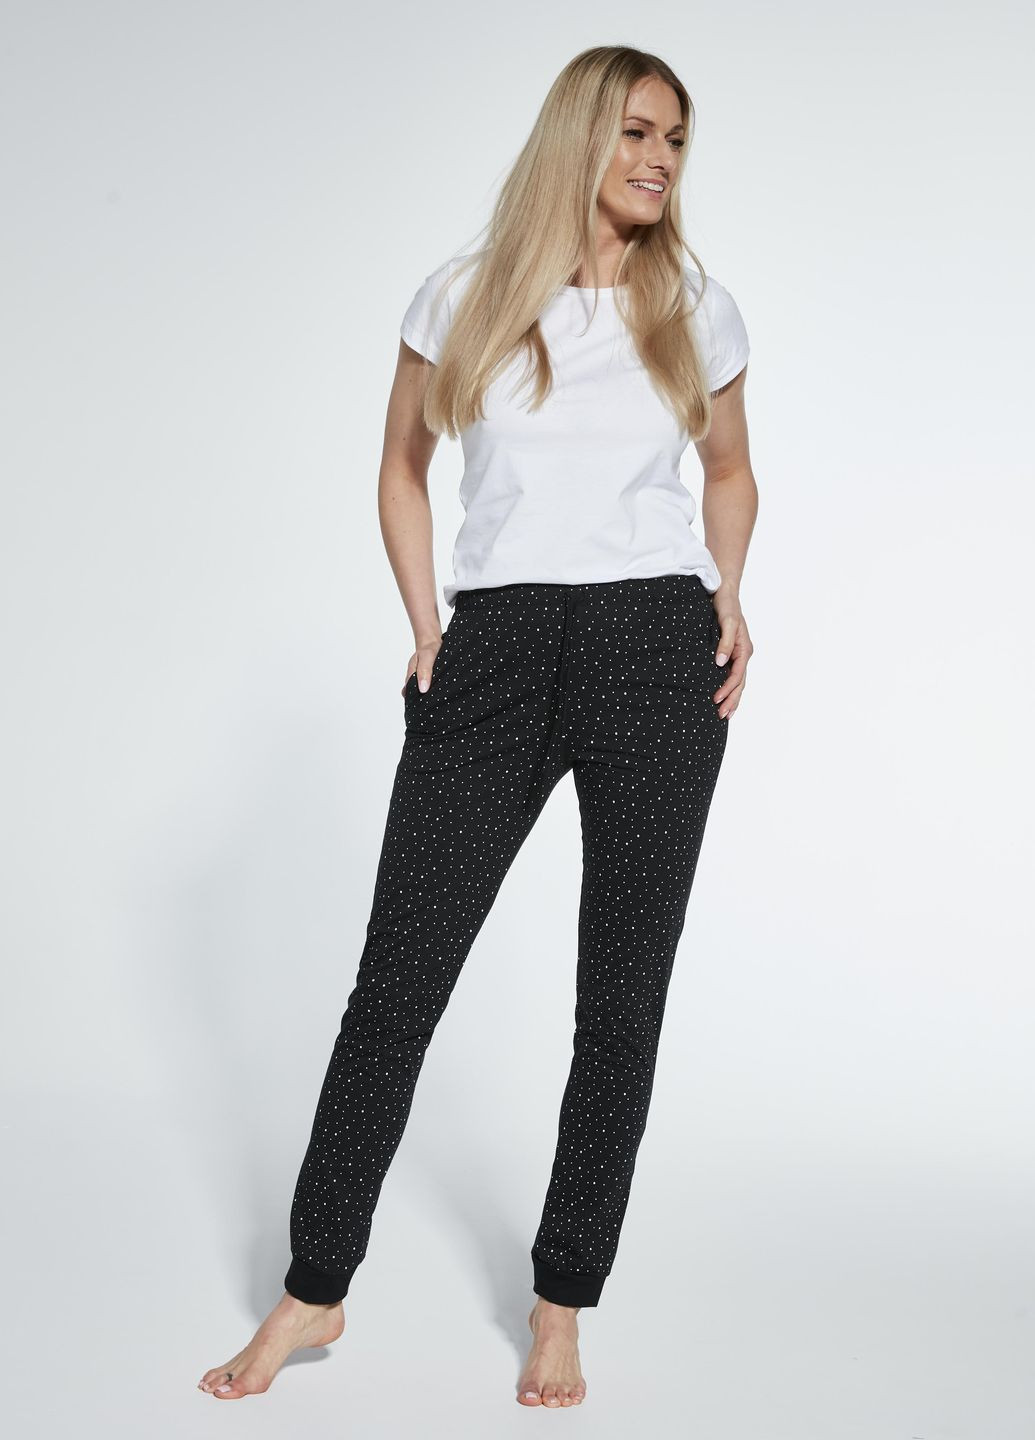 Черная брюки пижамные женские 02 xxl черные в горох 909-23 Cornette